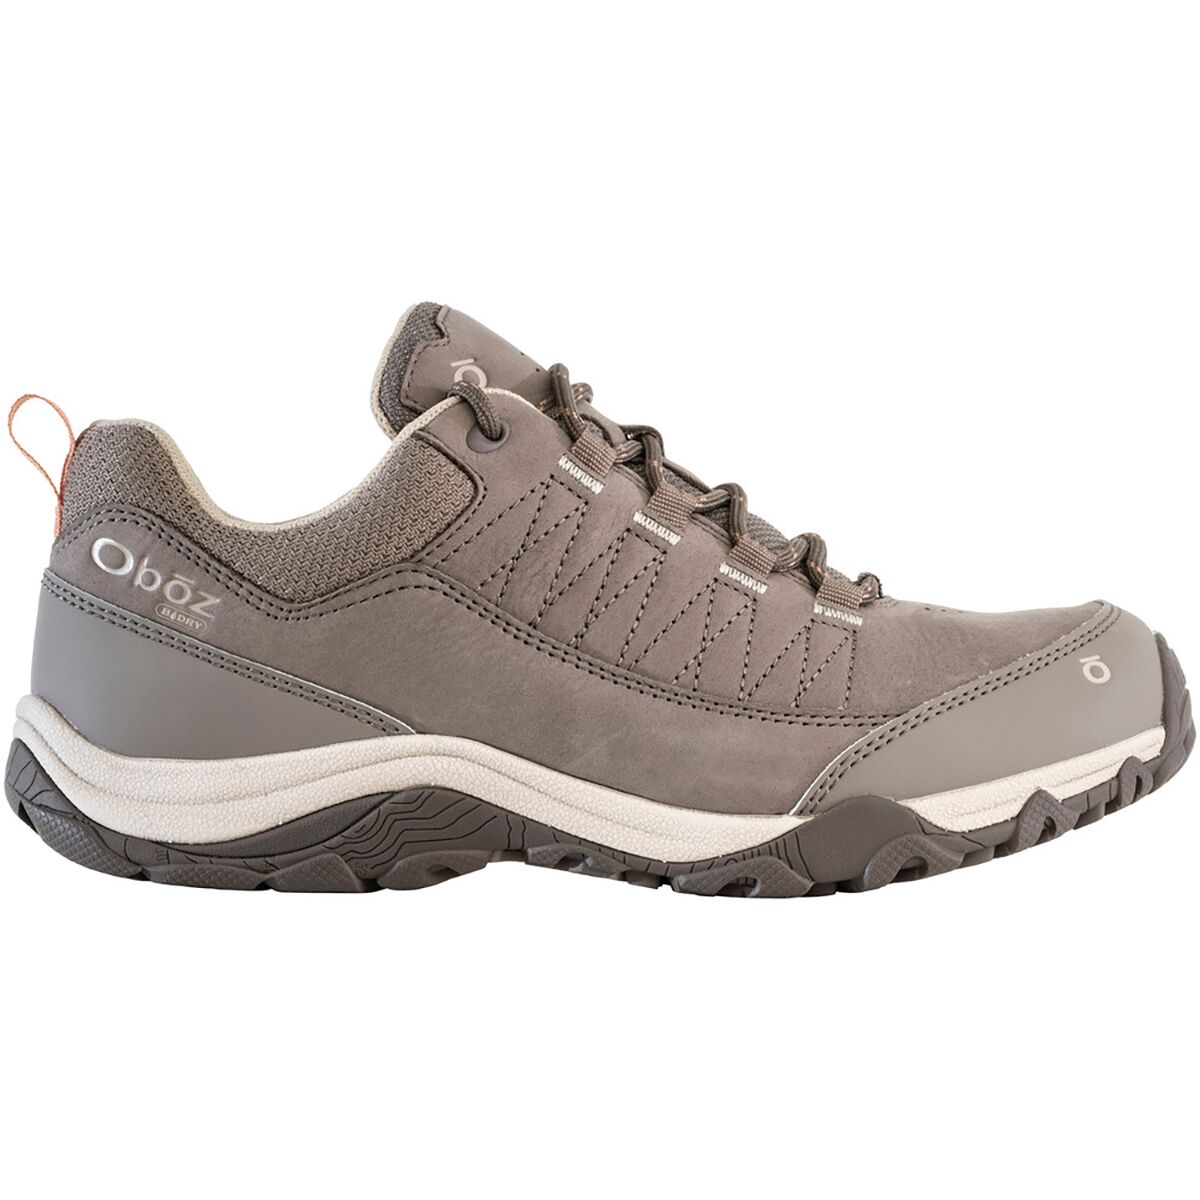 Ousel Low B-DRY Hiking Shoe - Women